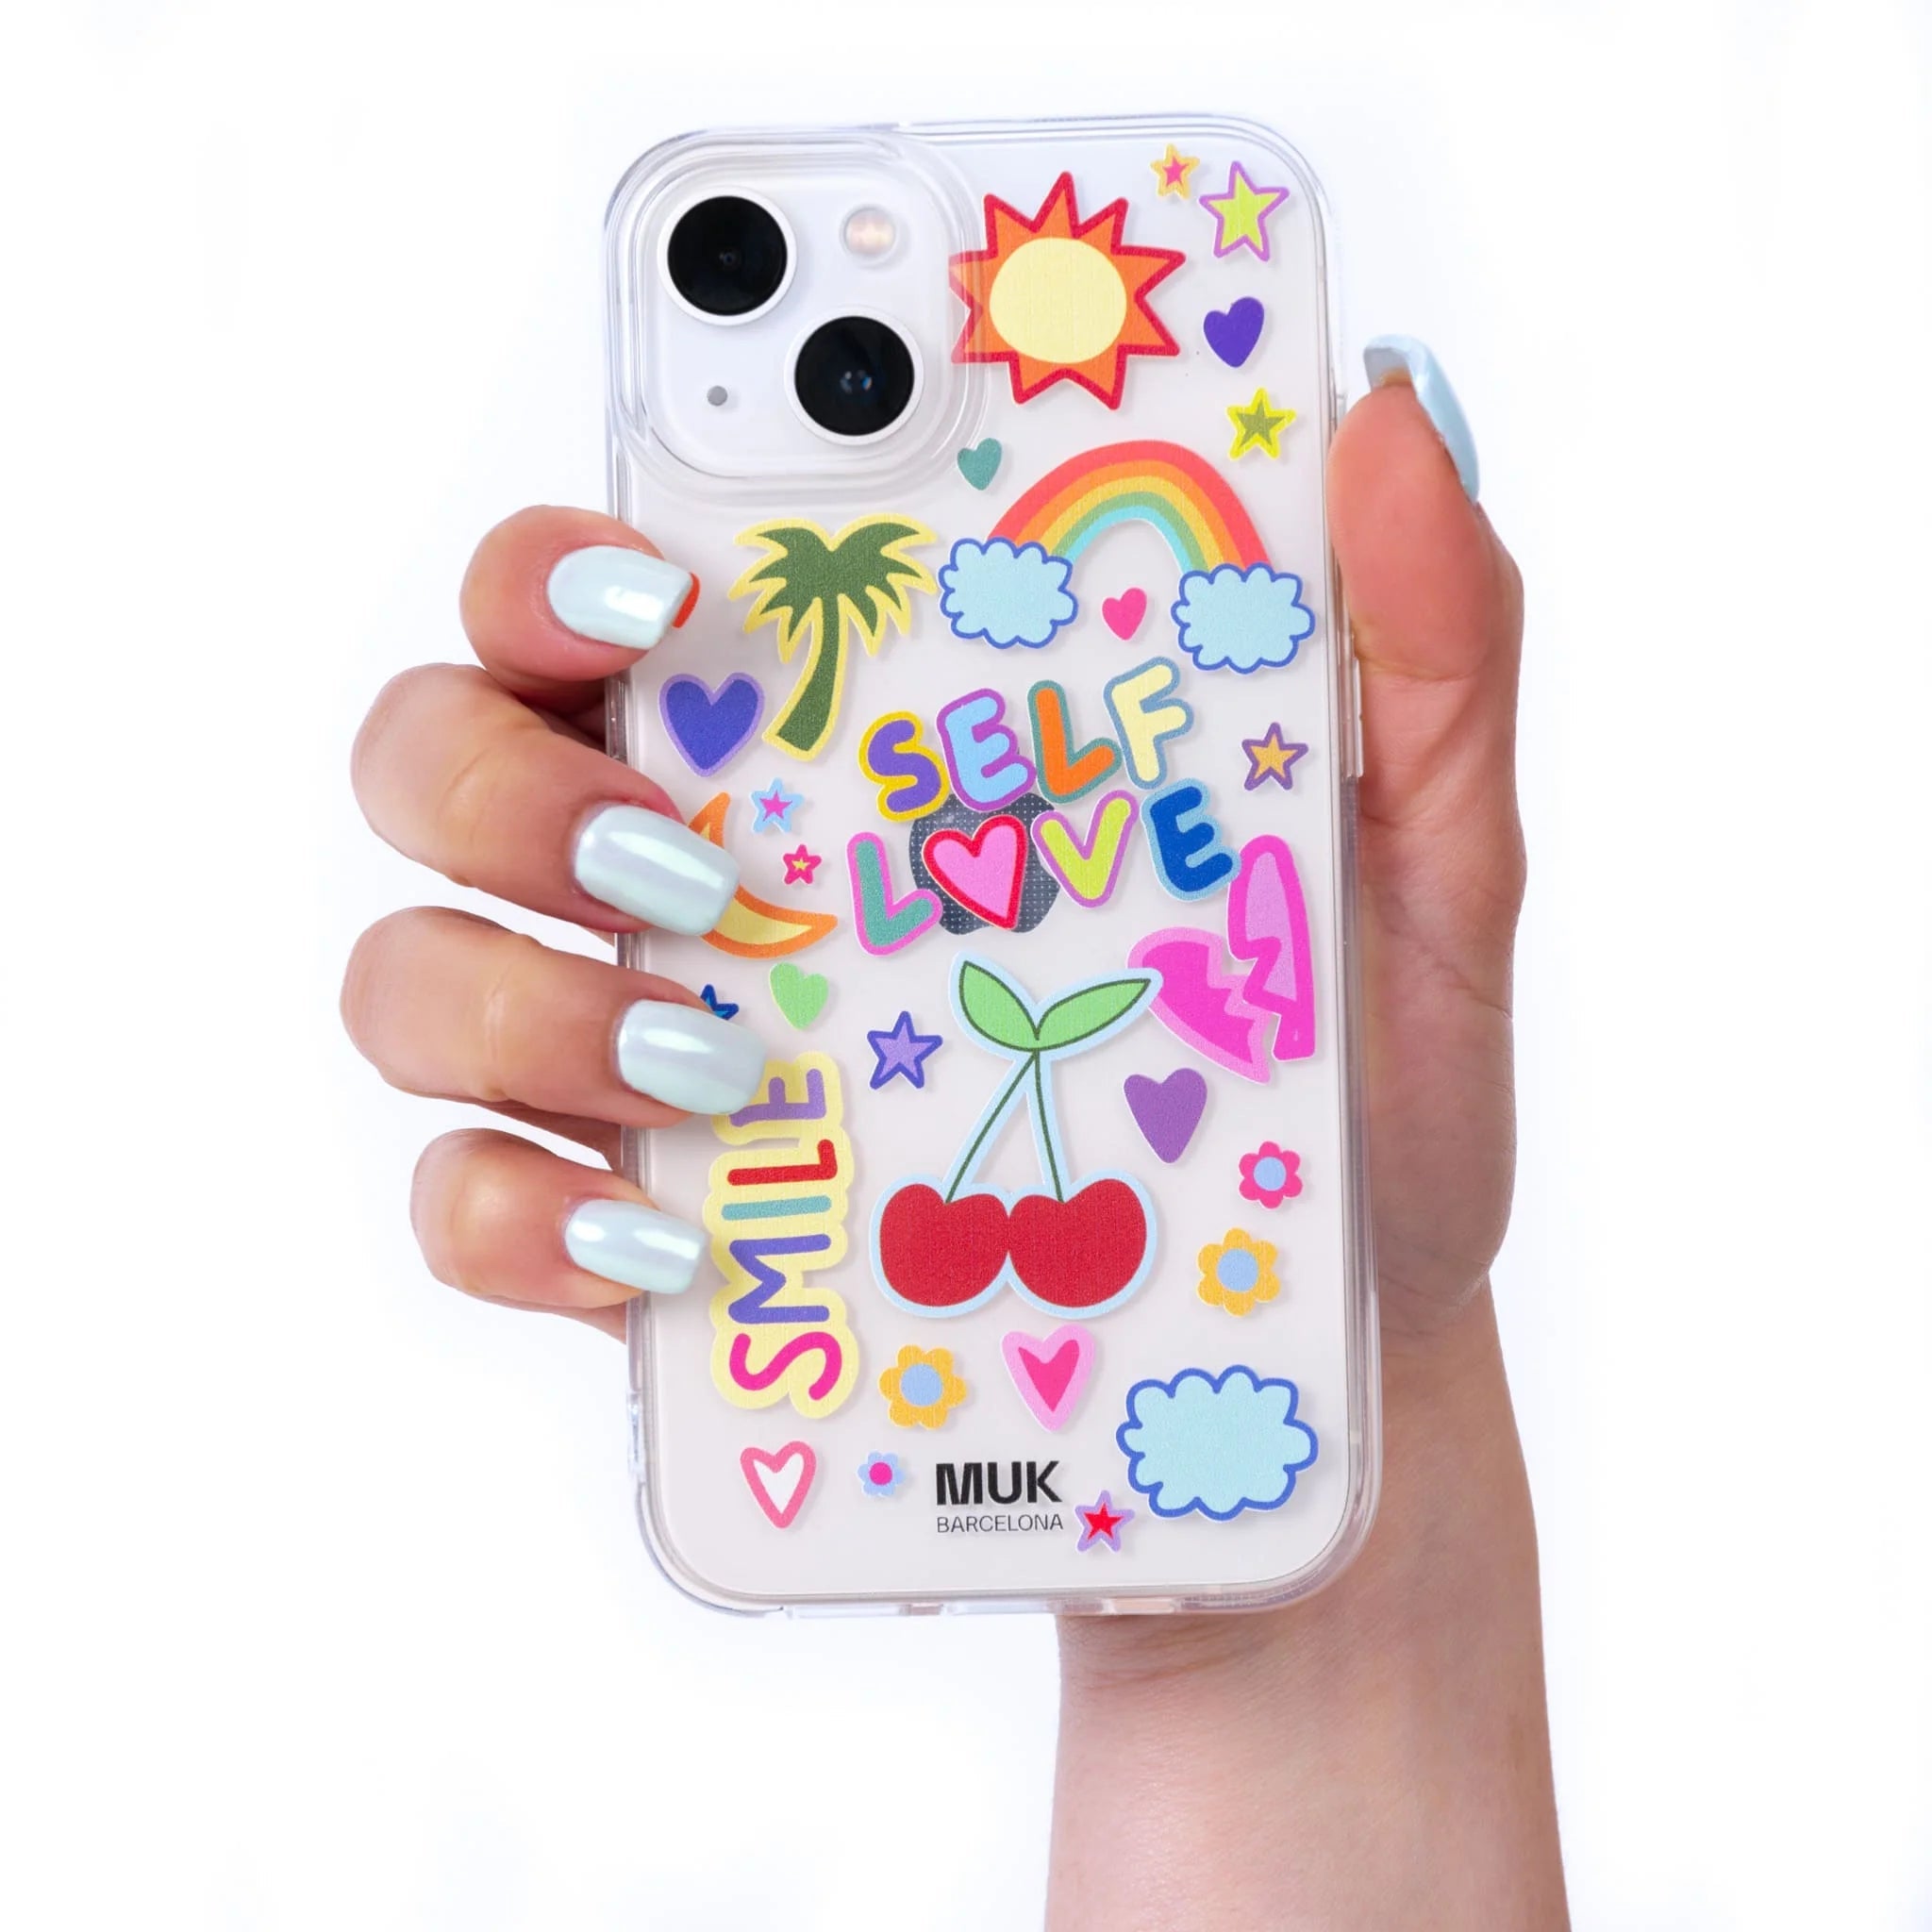 Funda de móvil transparente con stickers dibujados de colores.
